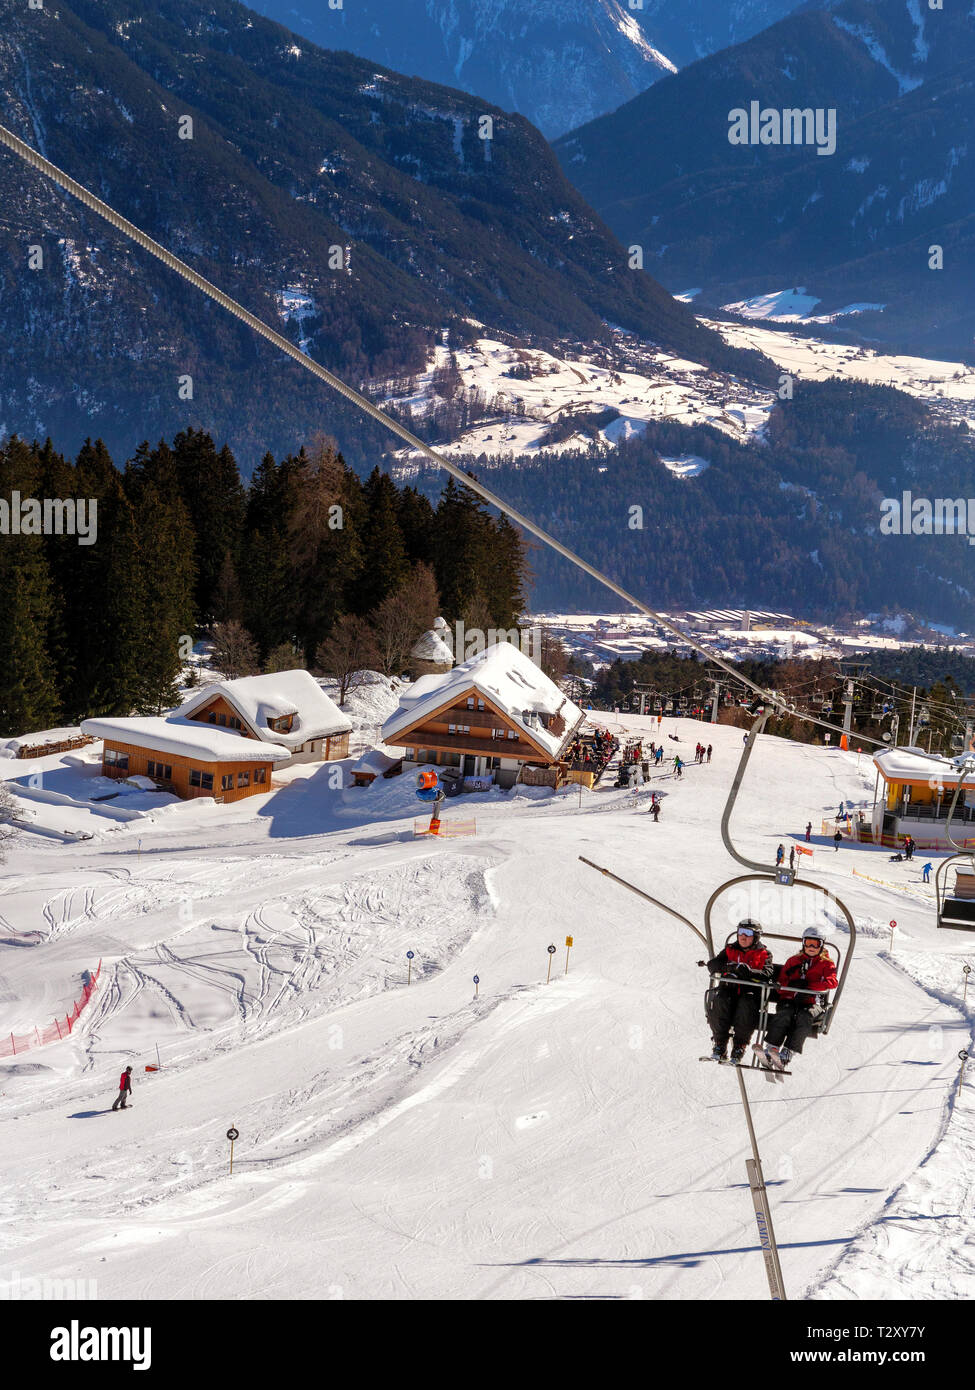 Skilift bei der Untermarkter Alm, Hochimst bei Imst, Tirol, Österreich,  Europa Skilift at alp Untermarkter Alm, skiing area Hochimst, Imst, Tyrol,  Au Stock Photo - Alamy